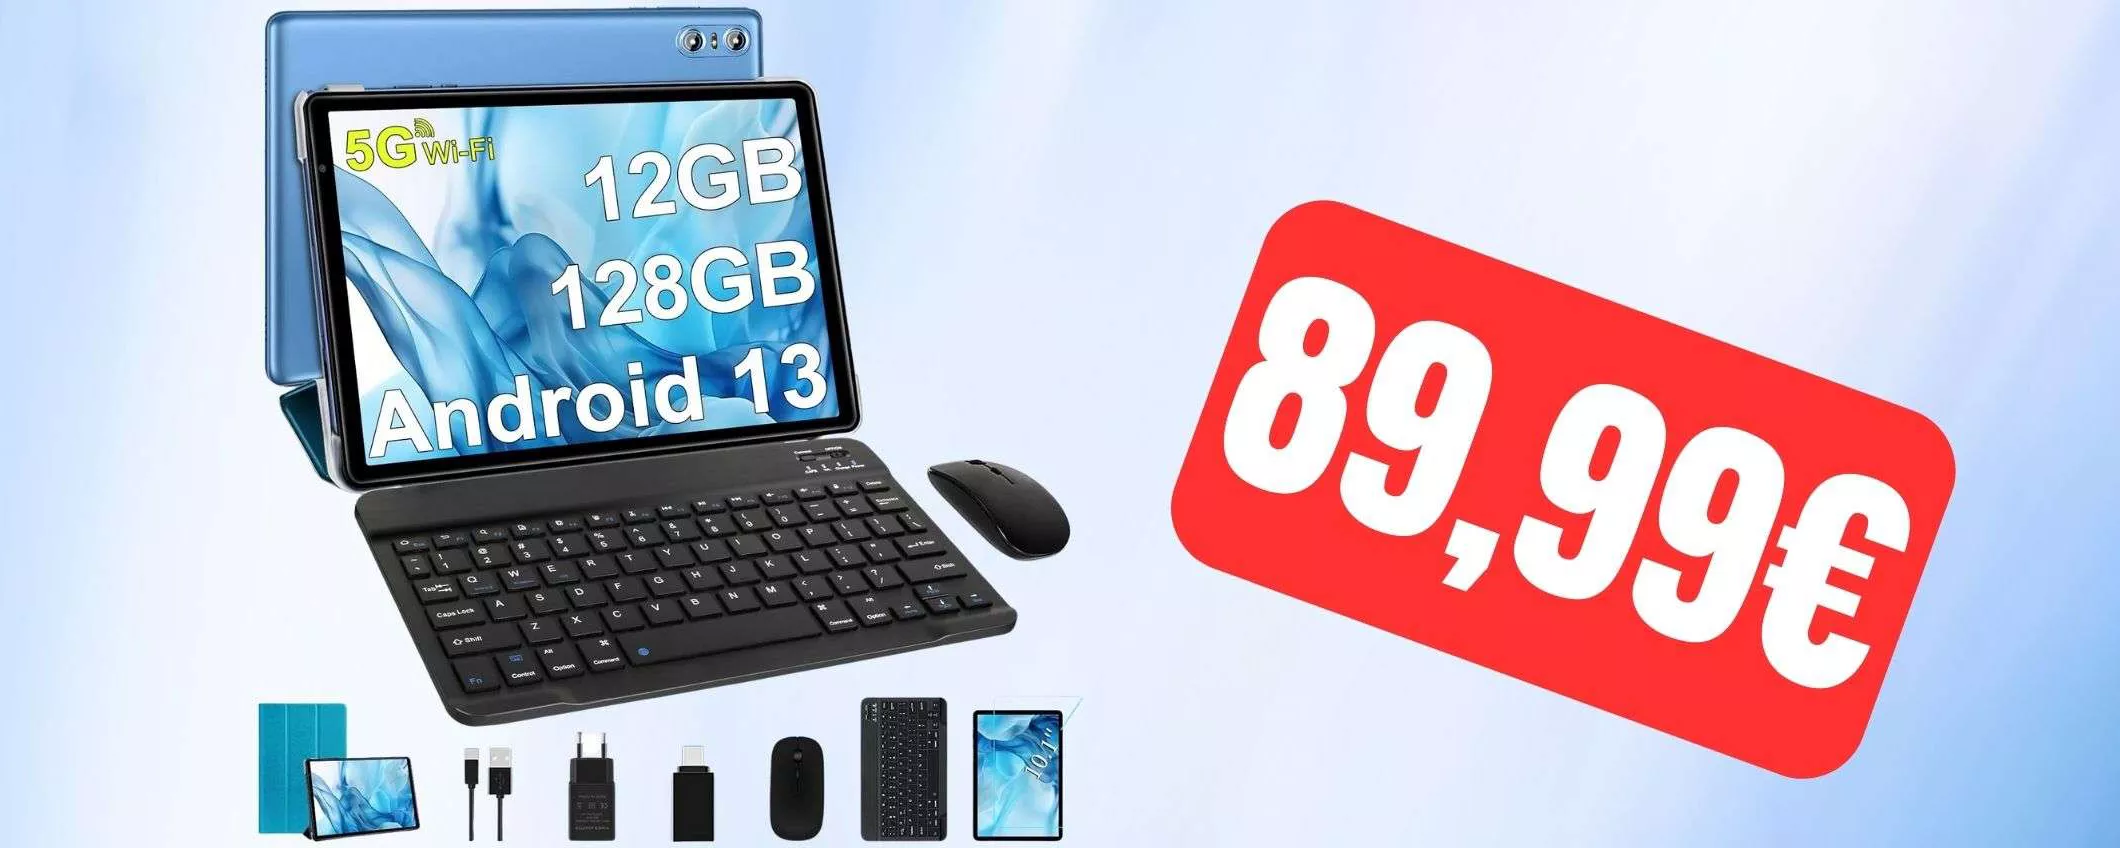 Questo tablet Android 13 ricco di accessori costa solo 89,99€ su Amazon